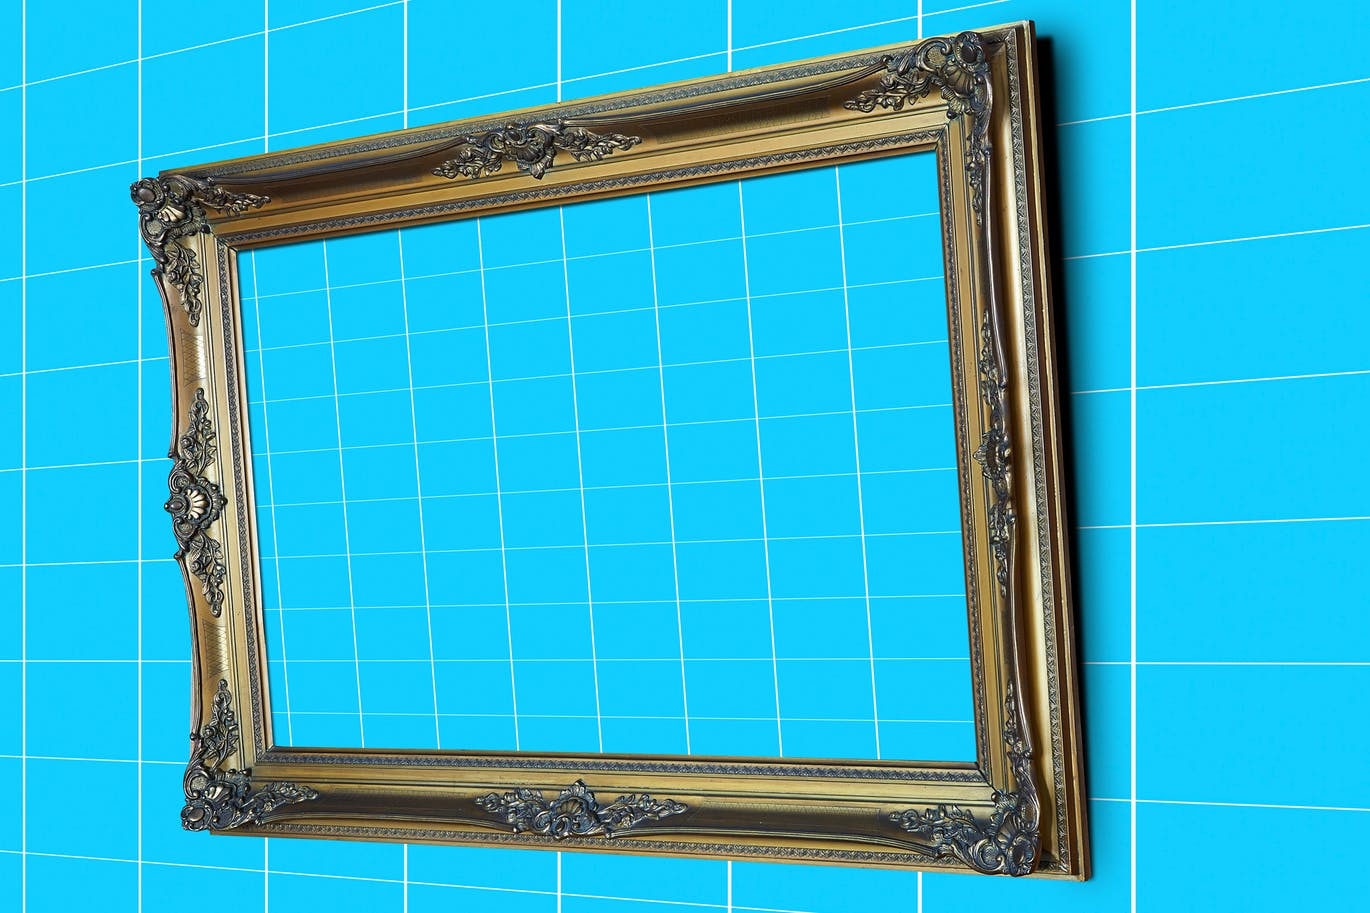 古典风格金色画框相框样机第一素材精选 Gold_Frame_Perspective_Mockup插图